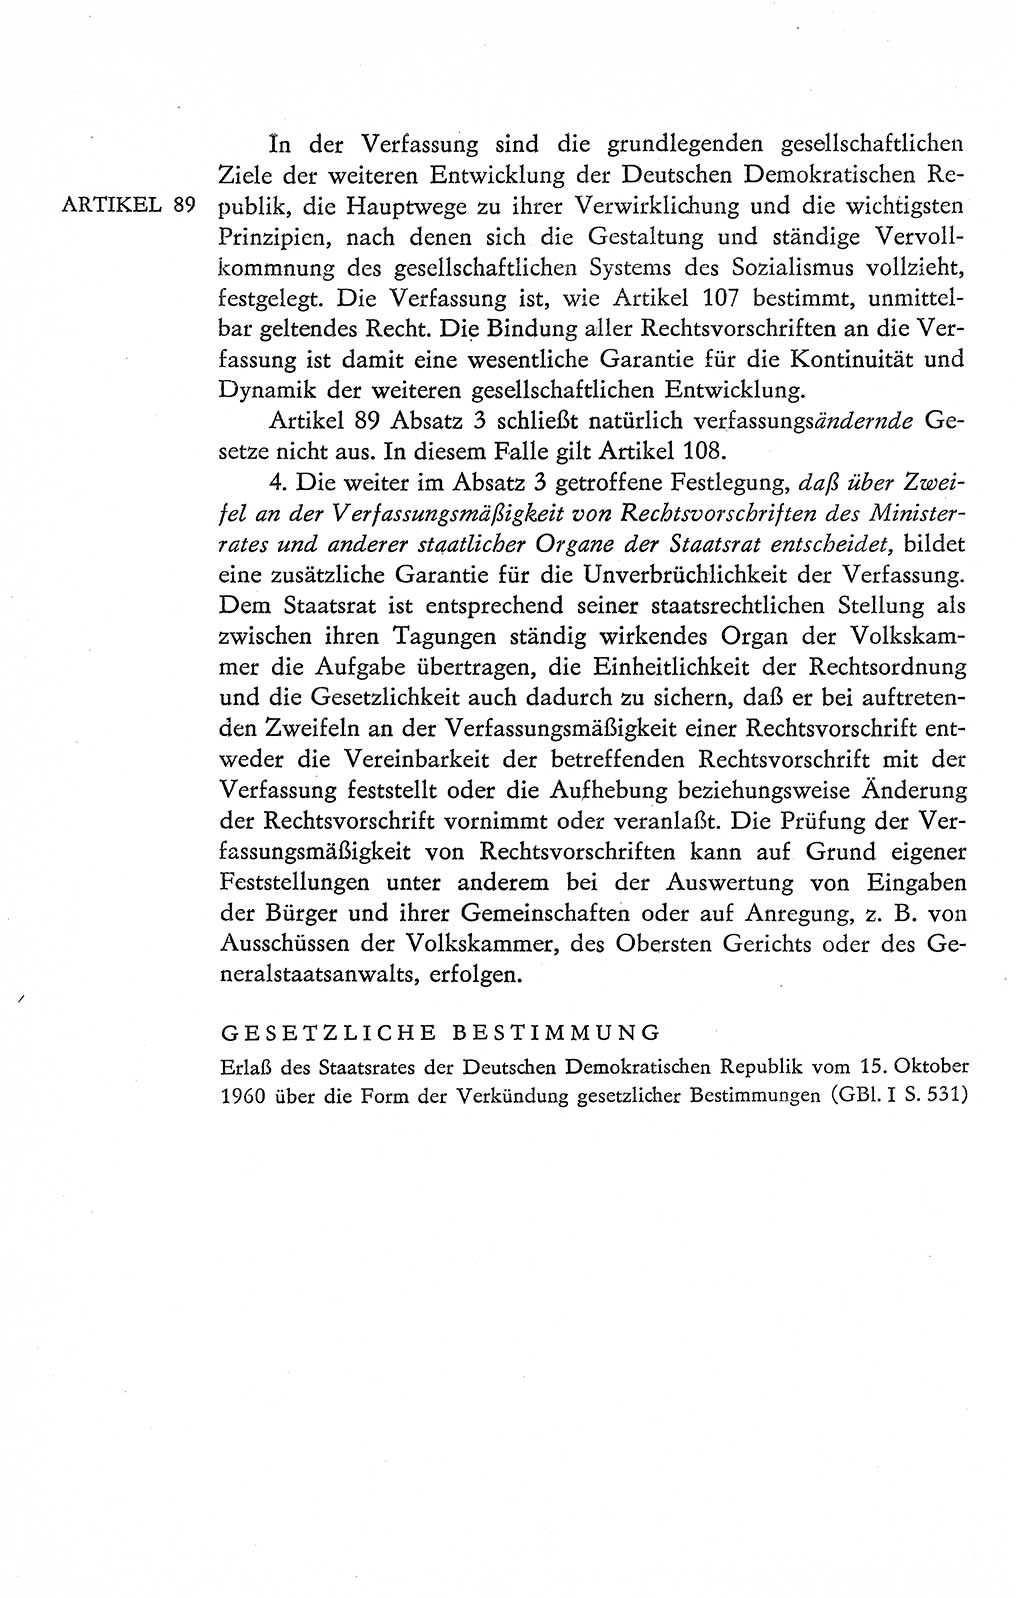 Verfassung der Deutschen Demokratischen Republik (DDR), Dokumente, Kommentar 1969, Band 2, Seite 424 (Verf. DDR Dok. Komm. 1969, Bd. 2, S. 424)